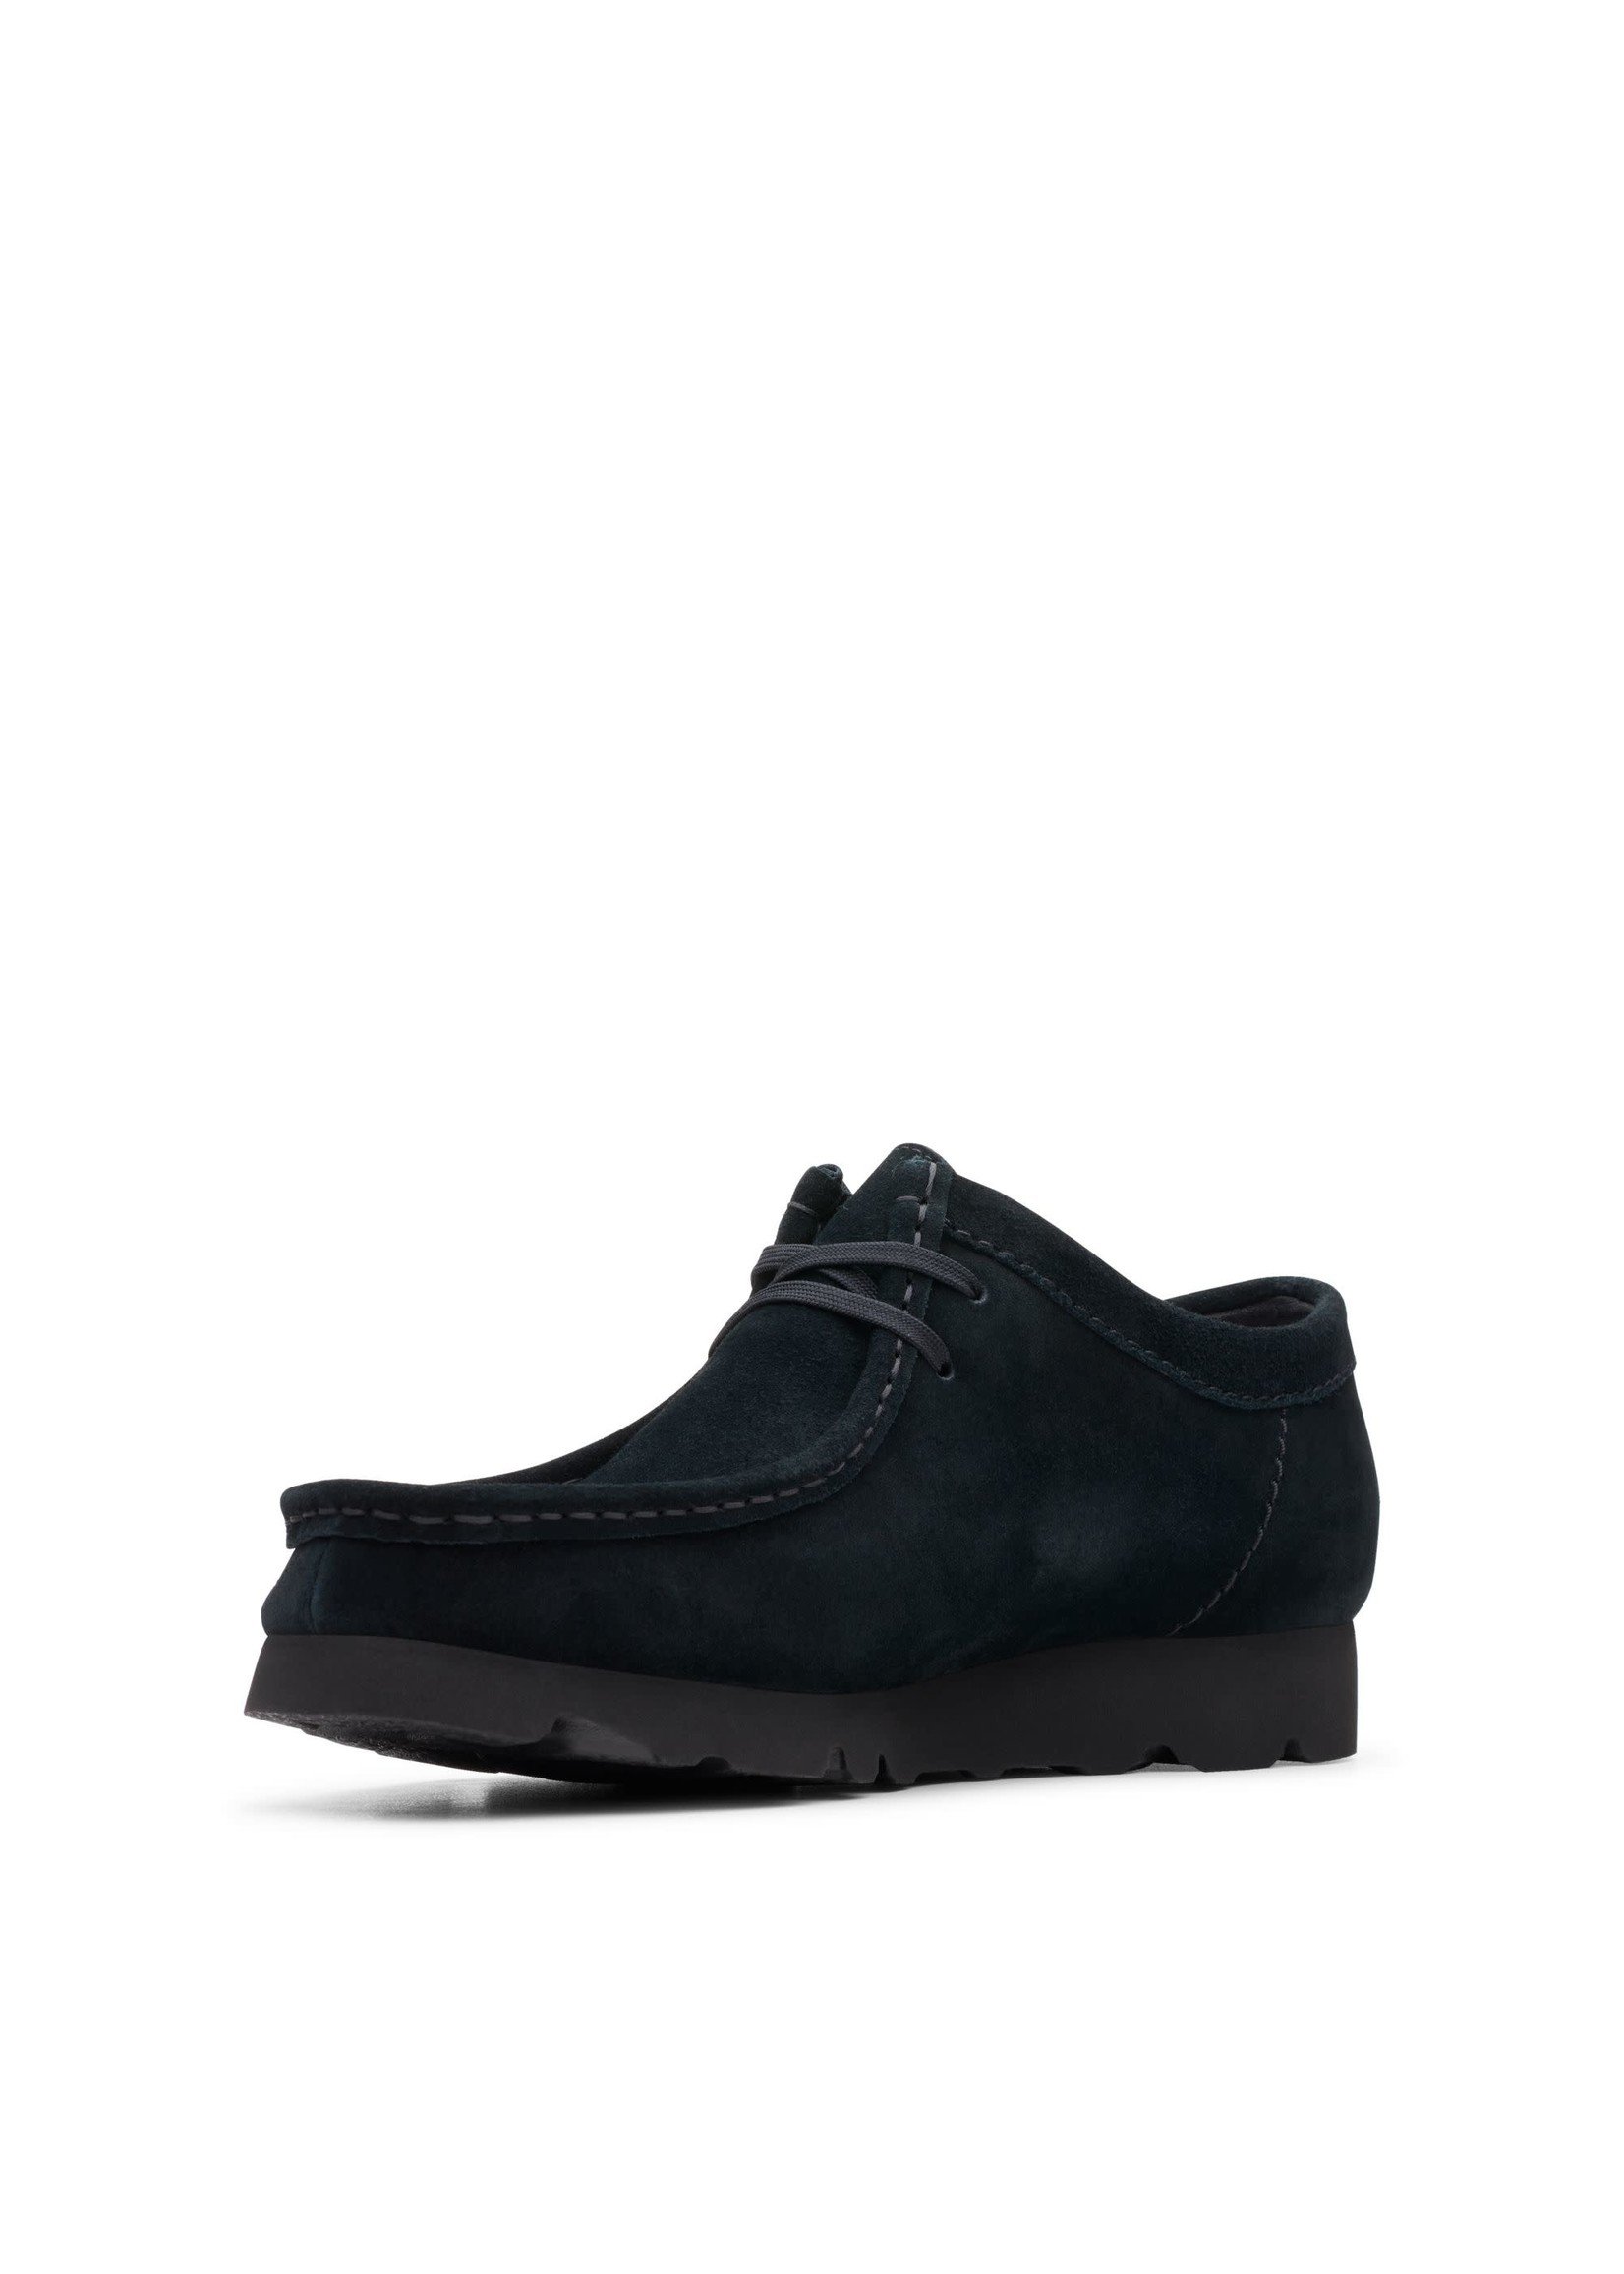 Men's Wallabee GTX Shoes, Black Suede - SHOE PLUS